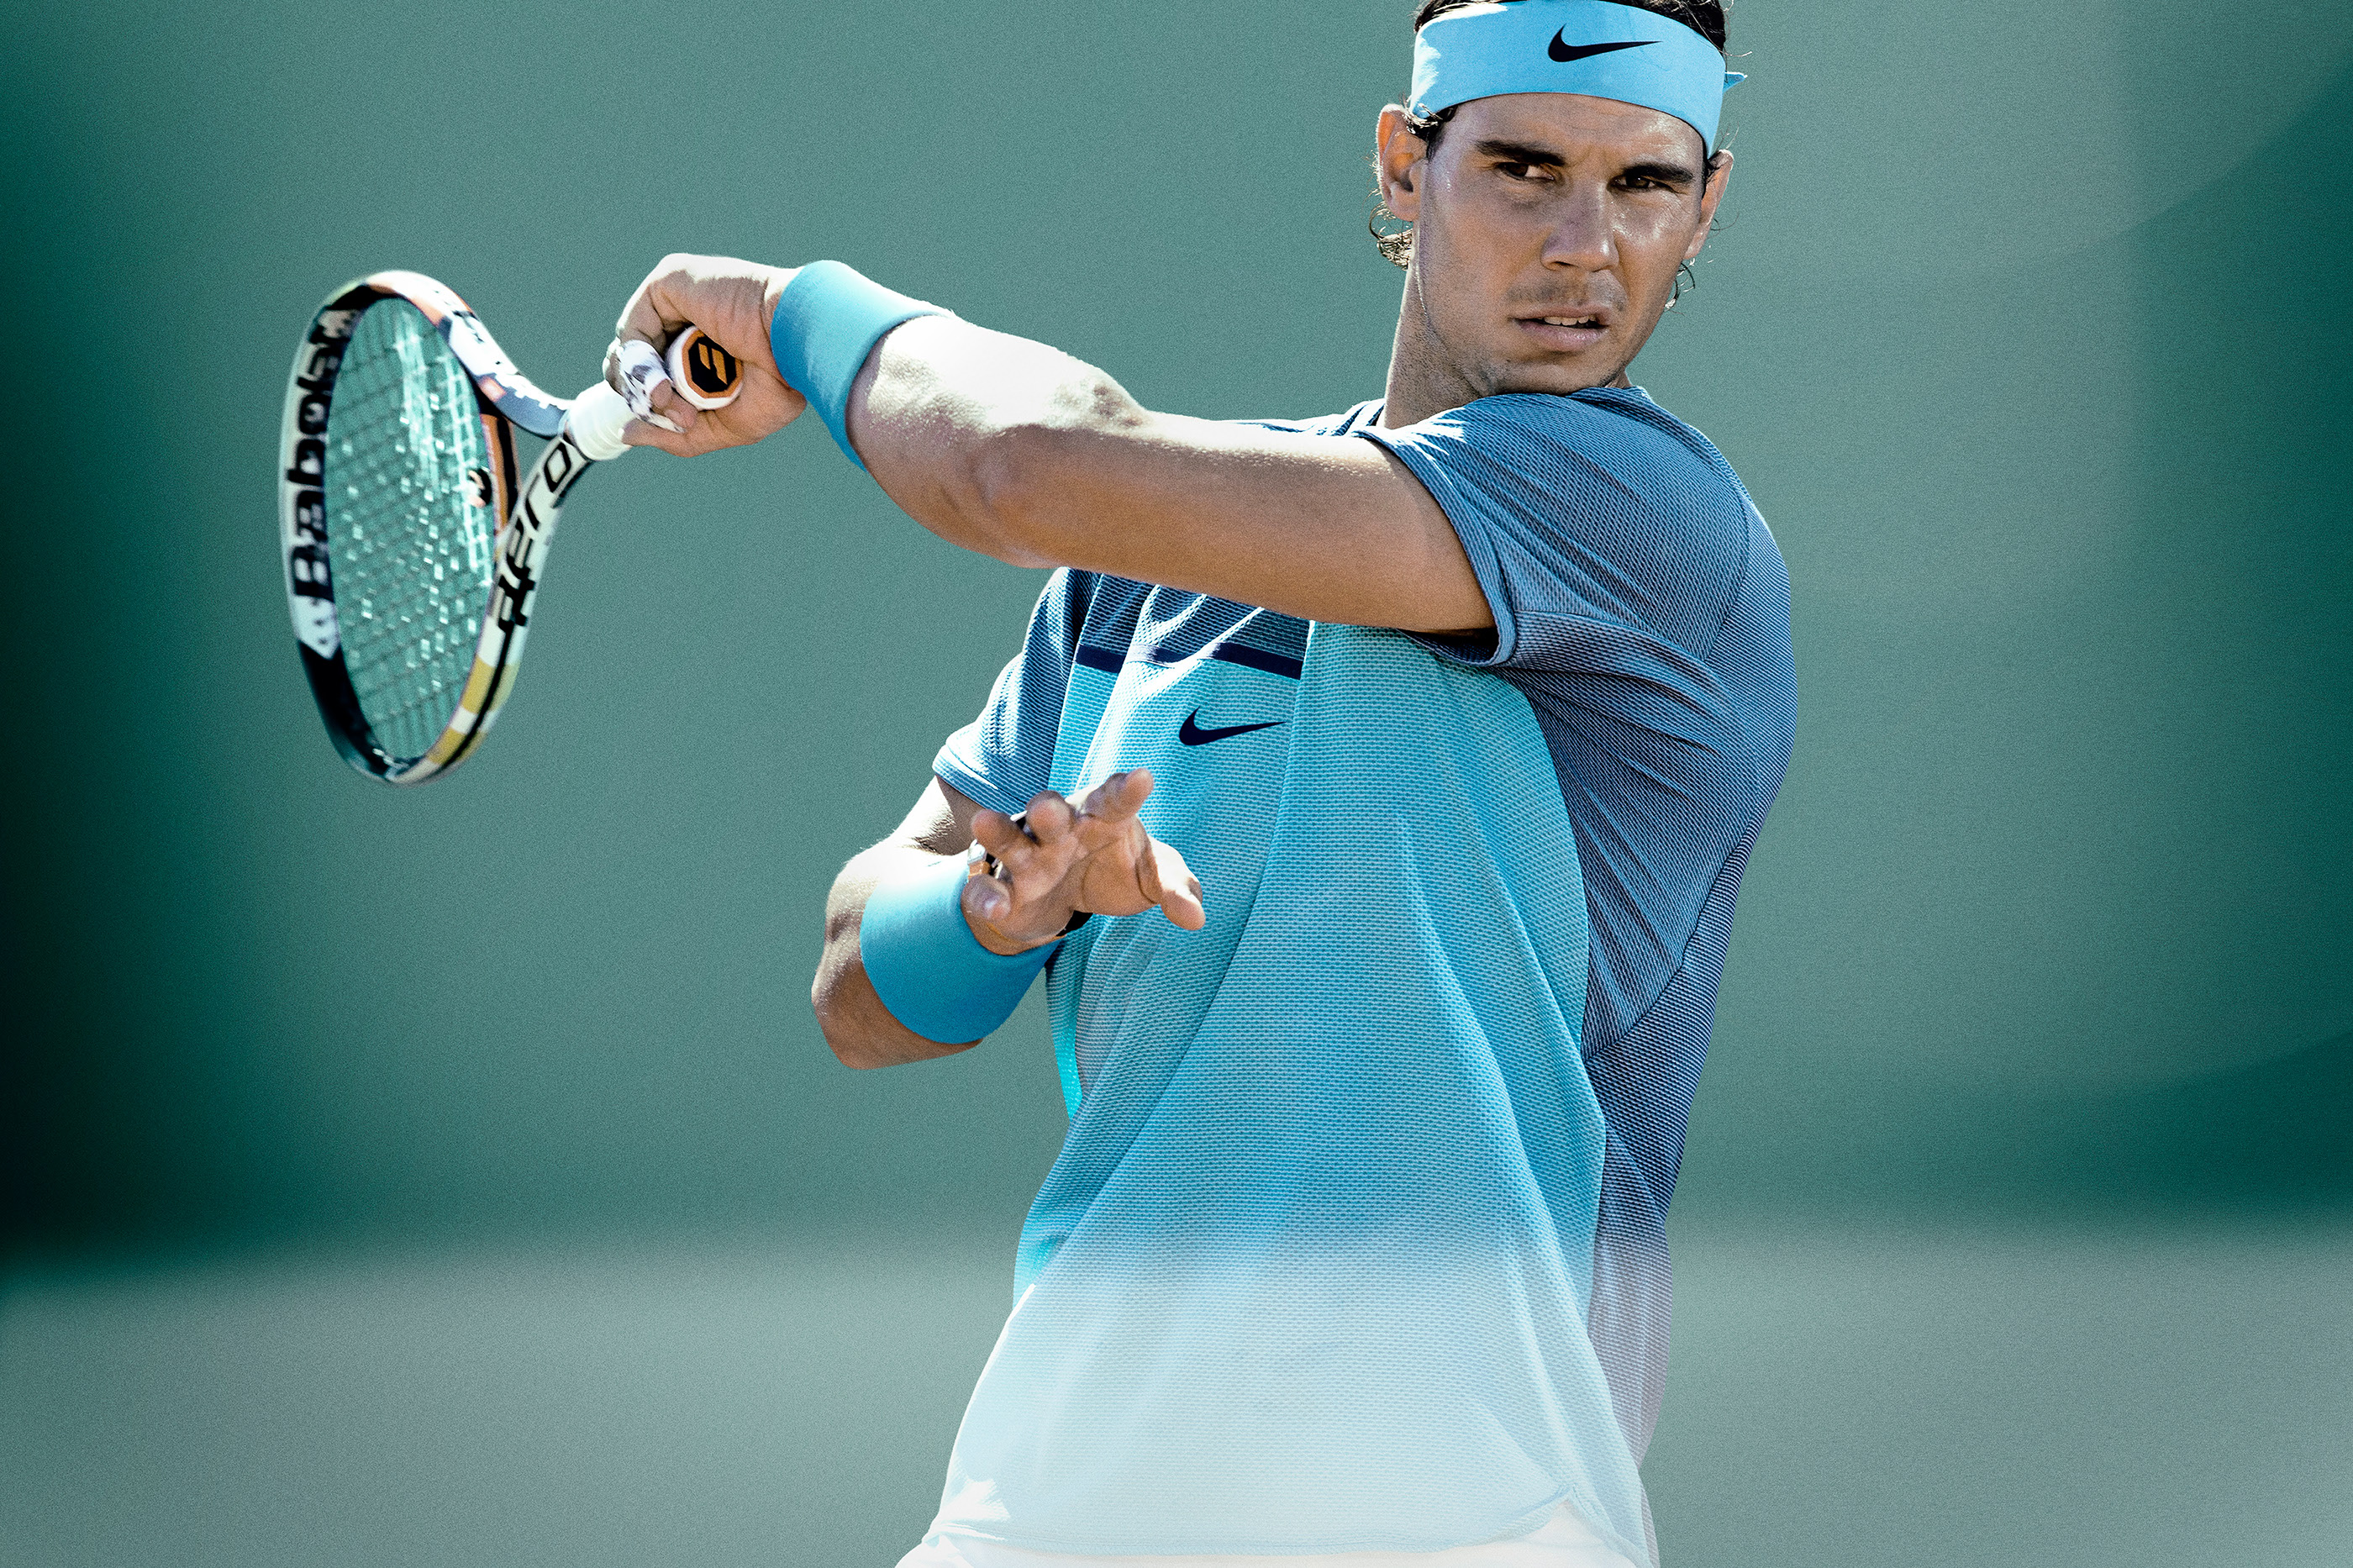 Найк теннис. Rafael Nadal Nike. Кроссовки найк теннис Надаль. Надаль Nike Court.